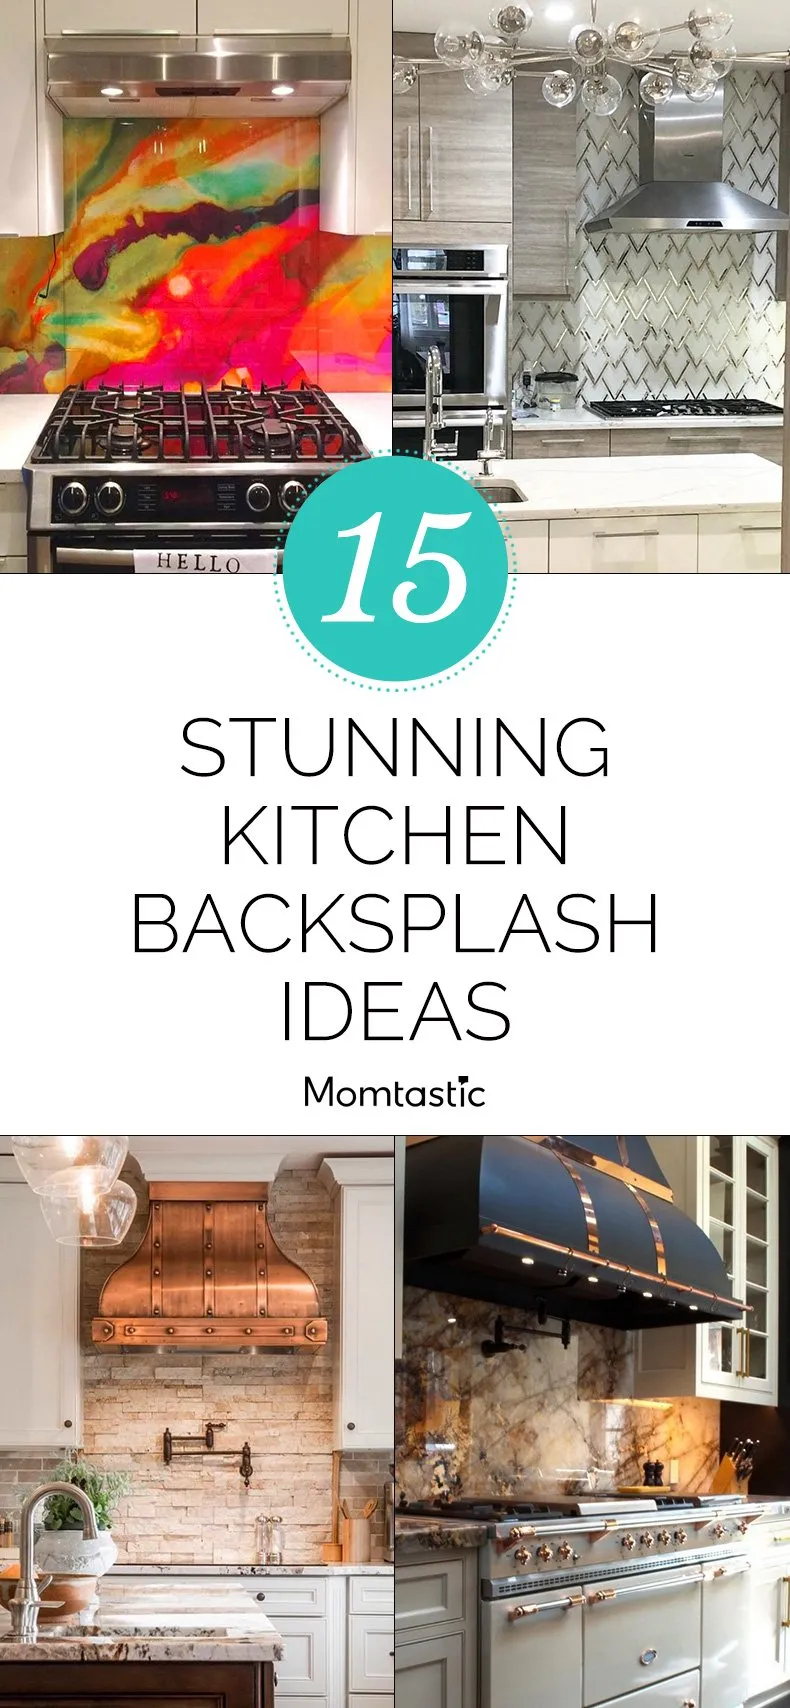 15 Stunning Kitchen Backsplash Ideas